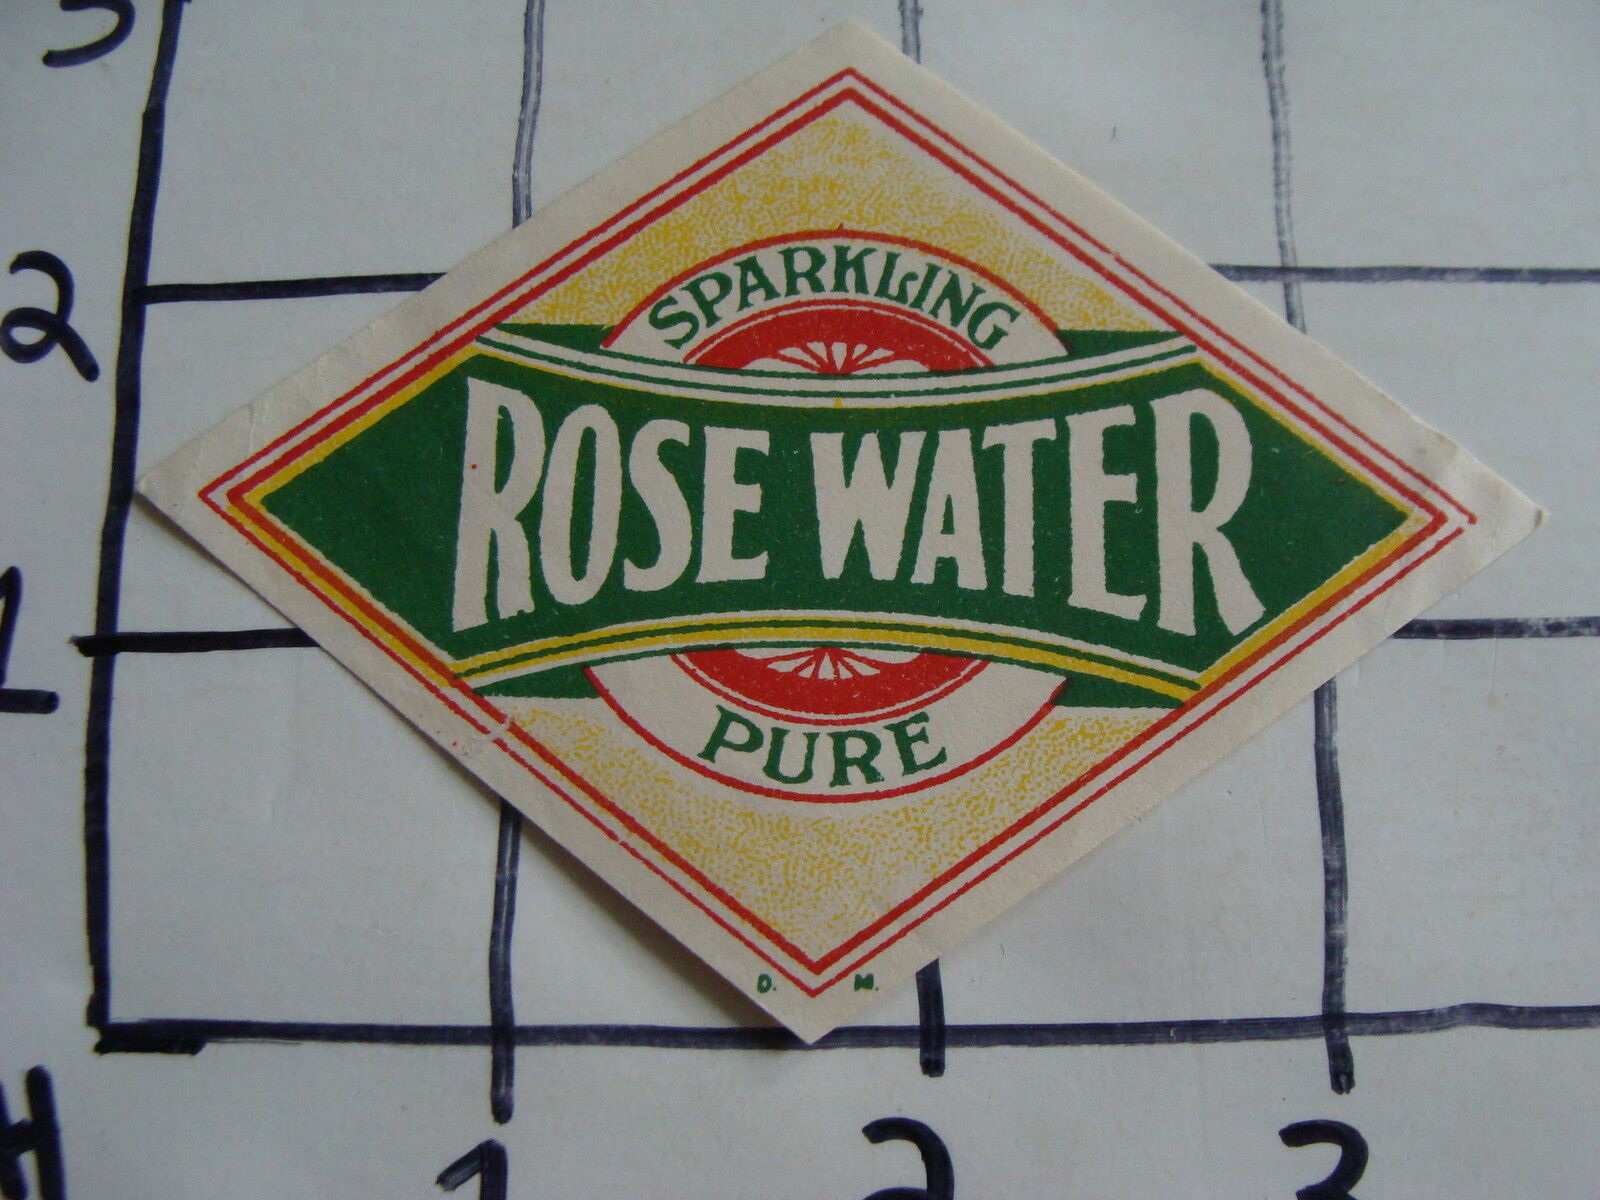 Original Vintage Label: Sparkling ROSE WATER pure